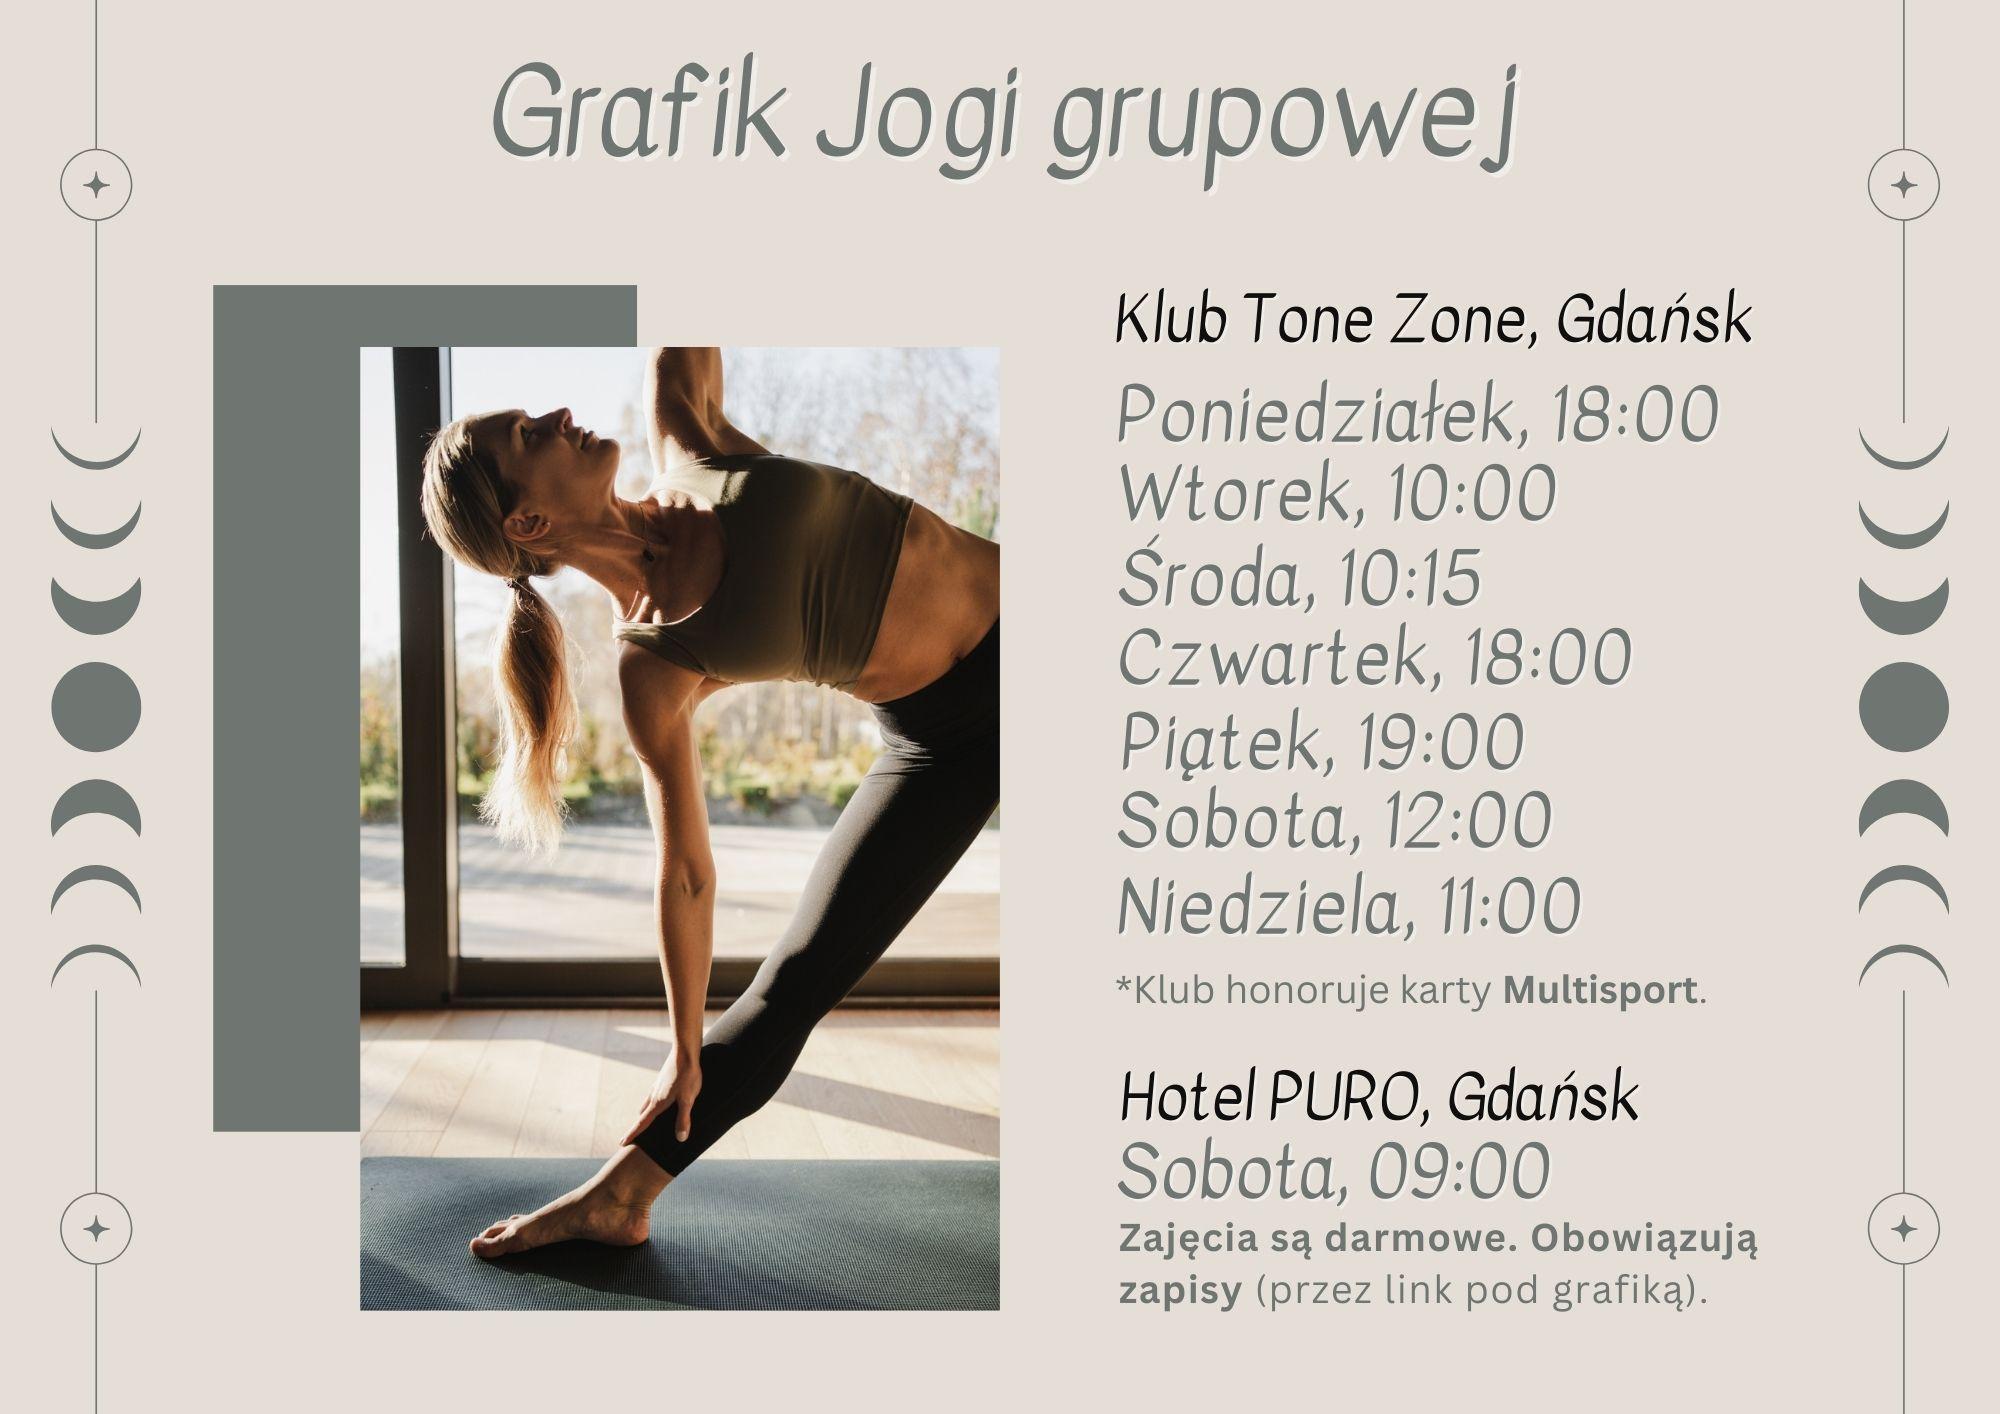 Grafik jogi grupowej w Gdańsku